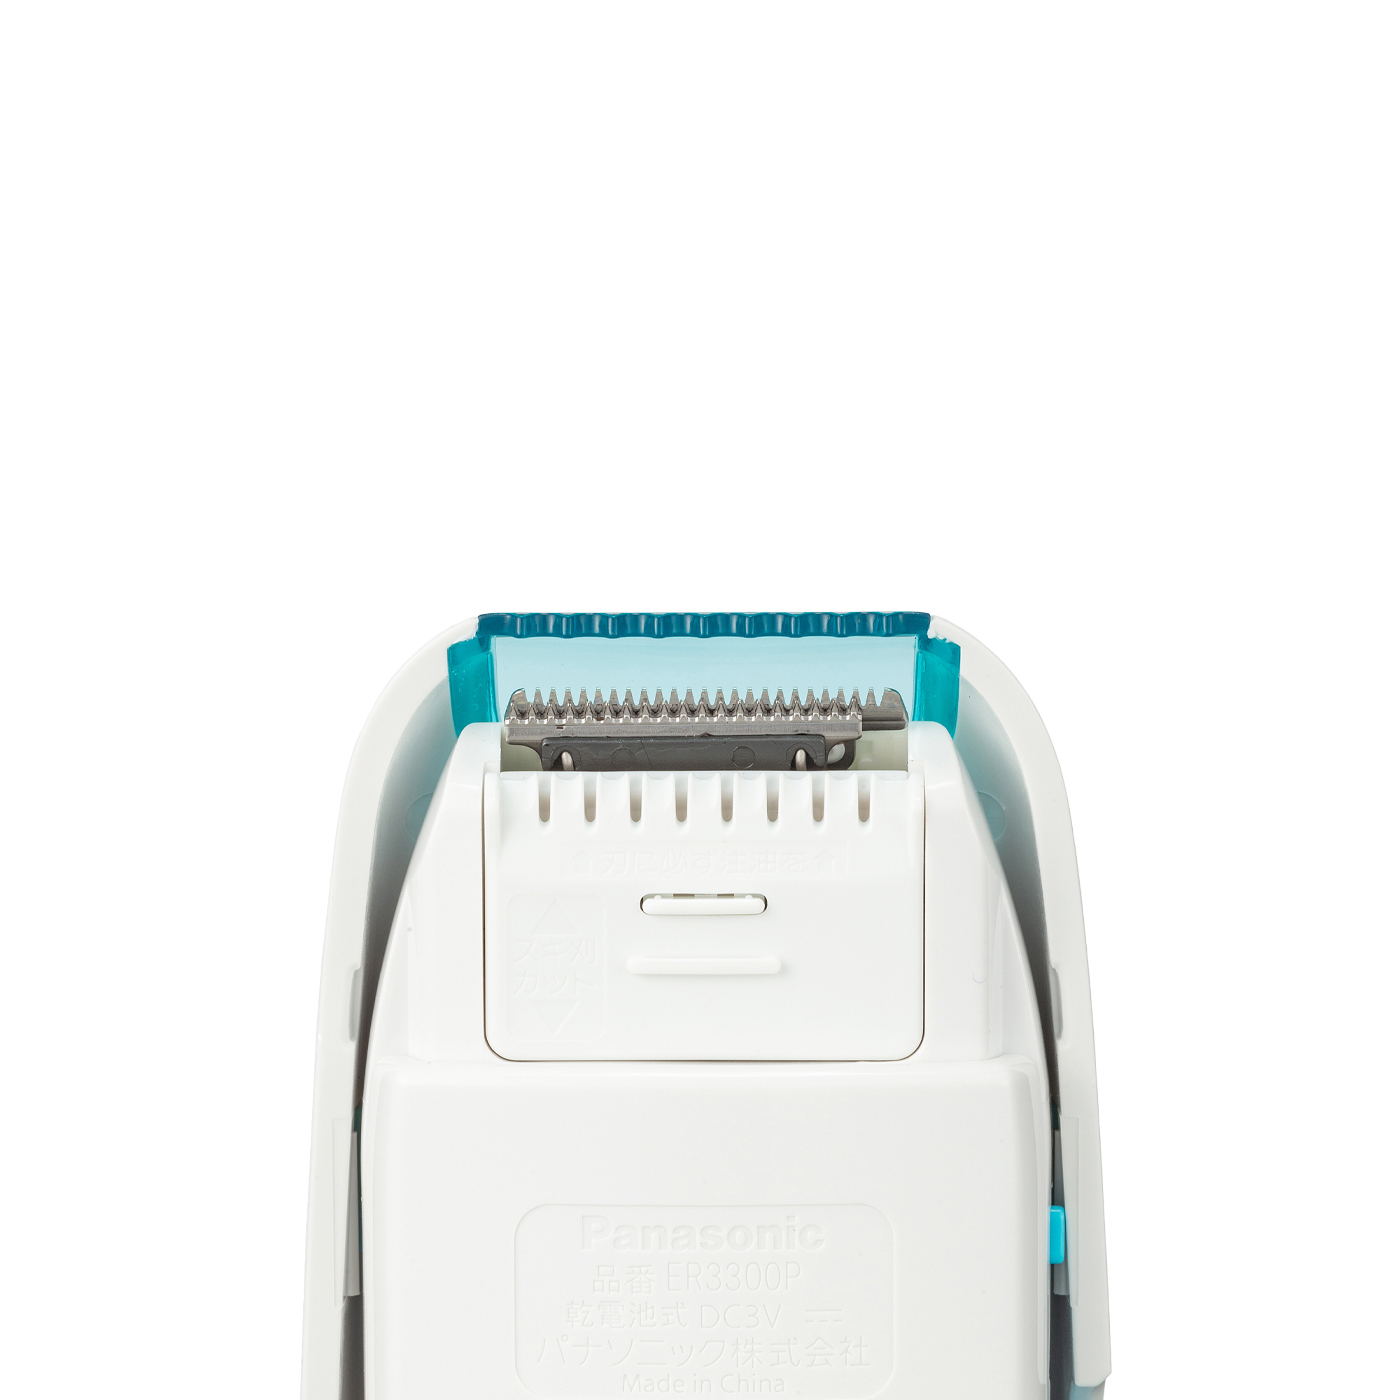 一部予約！】 <br>パナソニック Panasonic 赤ちゃん用ヘアーカッター 電池式 国内 海外対応 パックンカット ER3300P‐W 白 